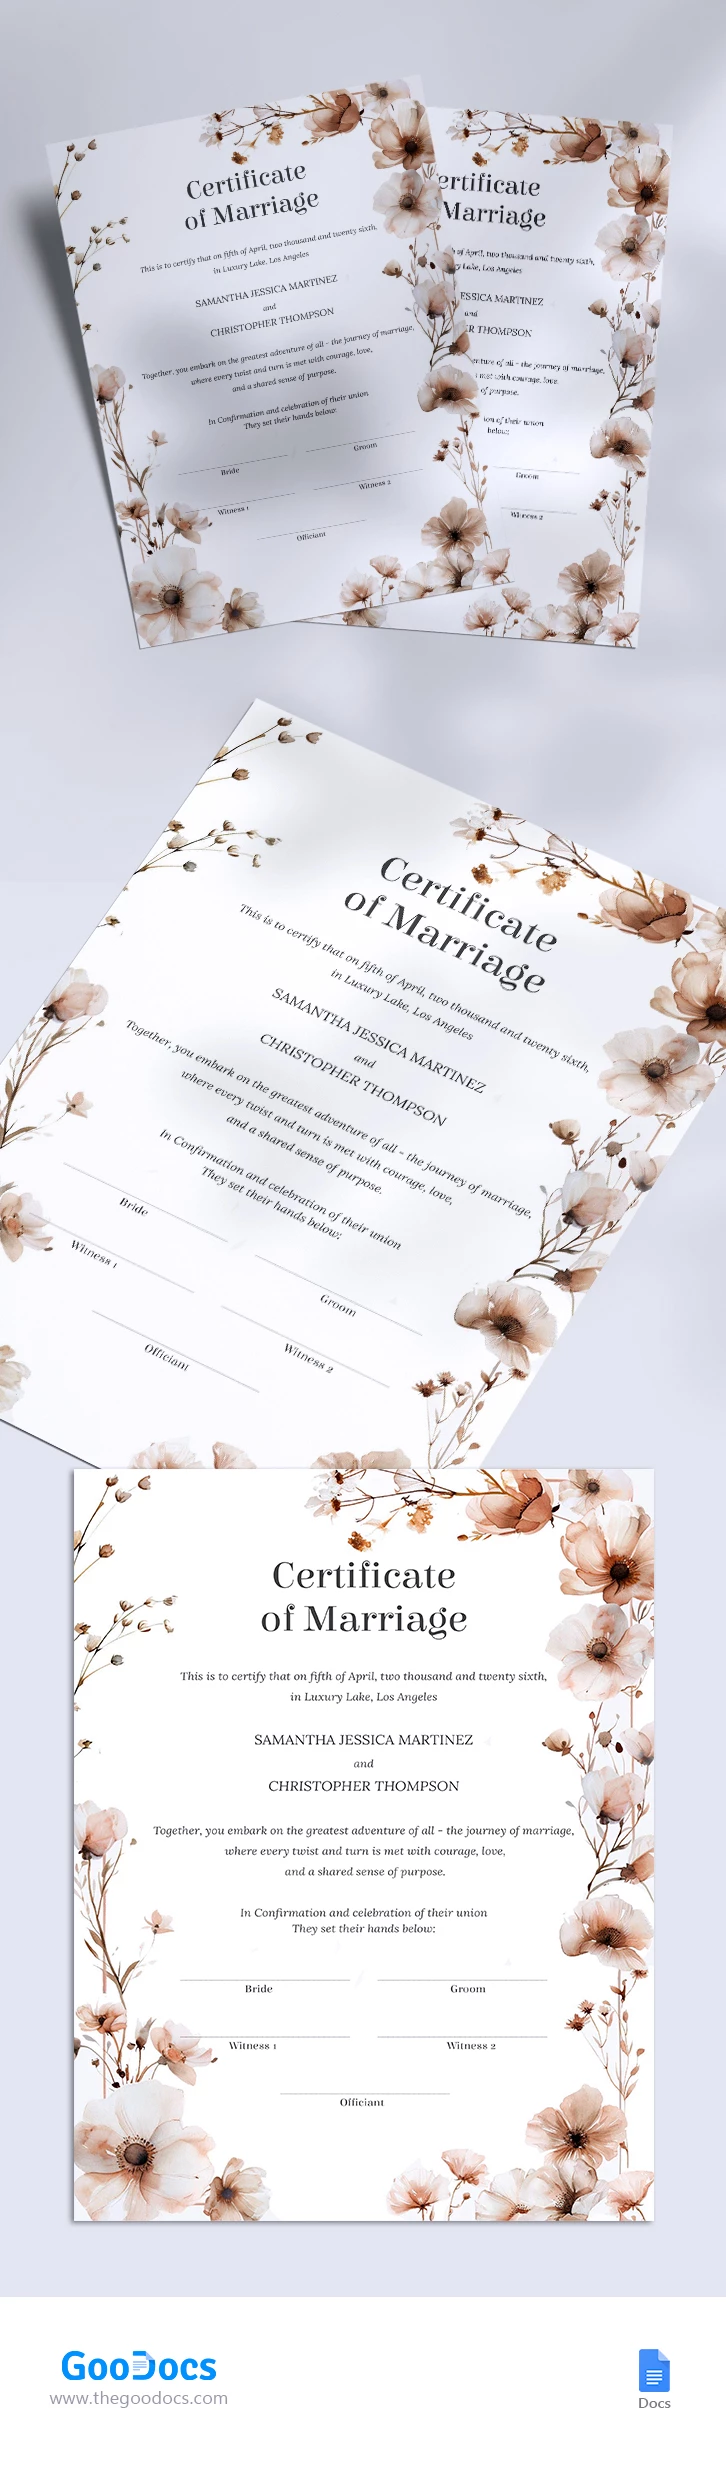 Certificato di matrimonio - free Google Docs Template - 10068336